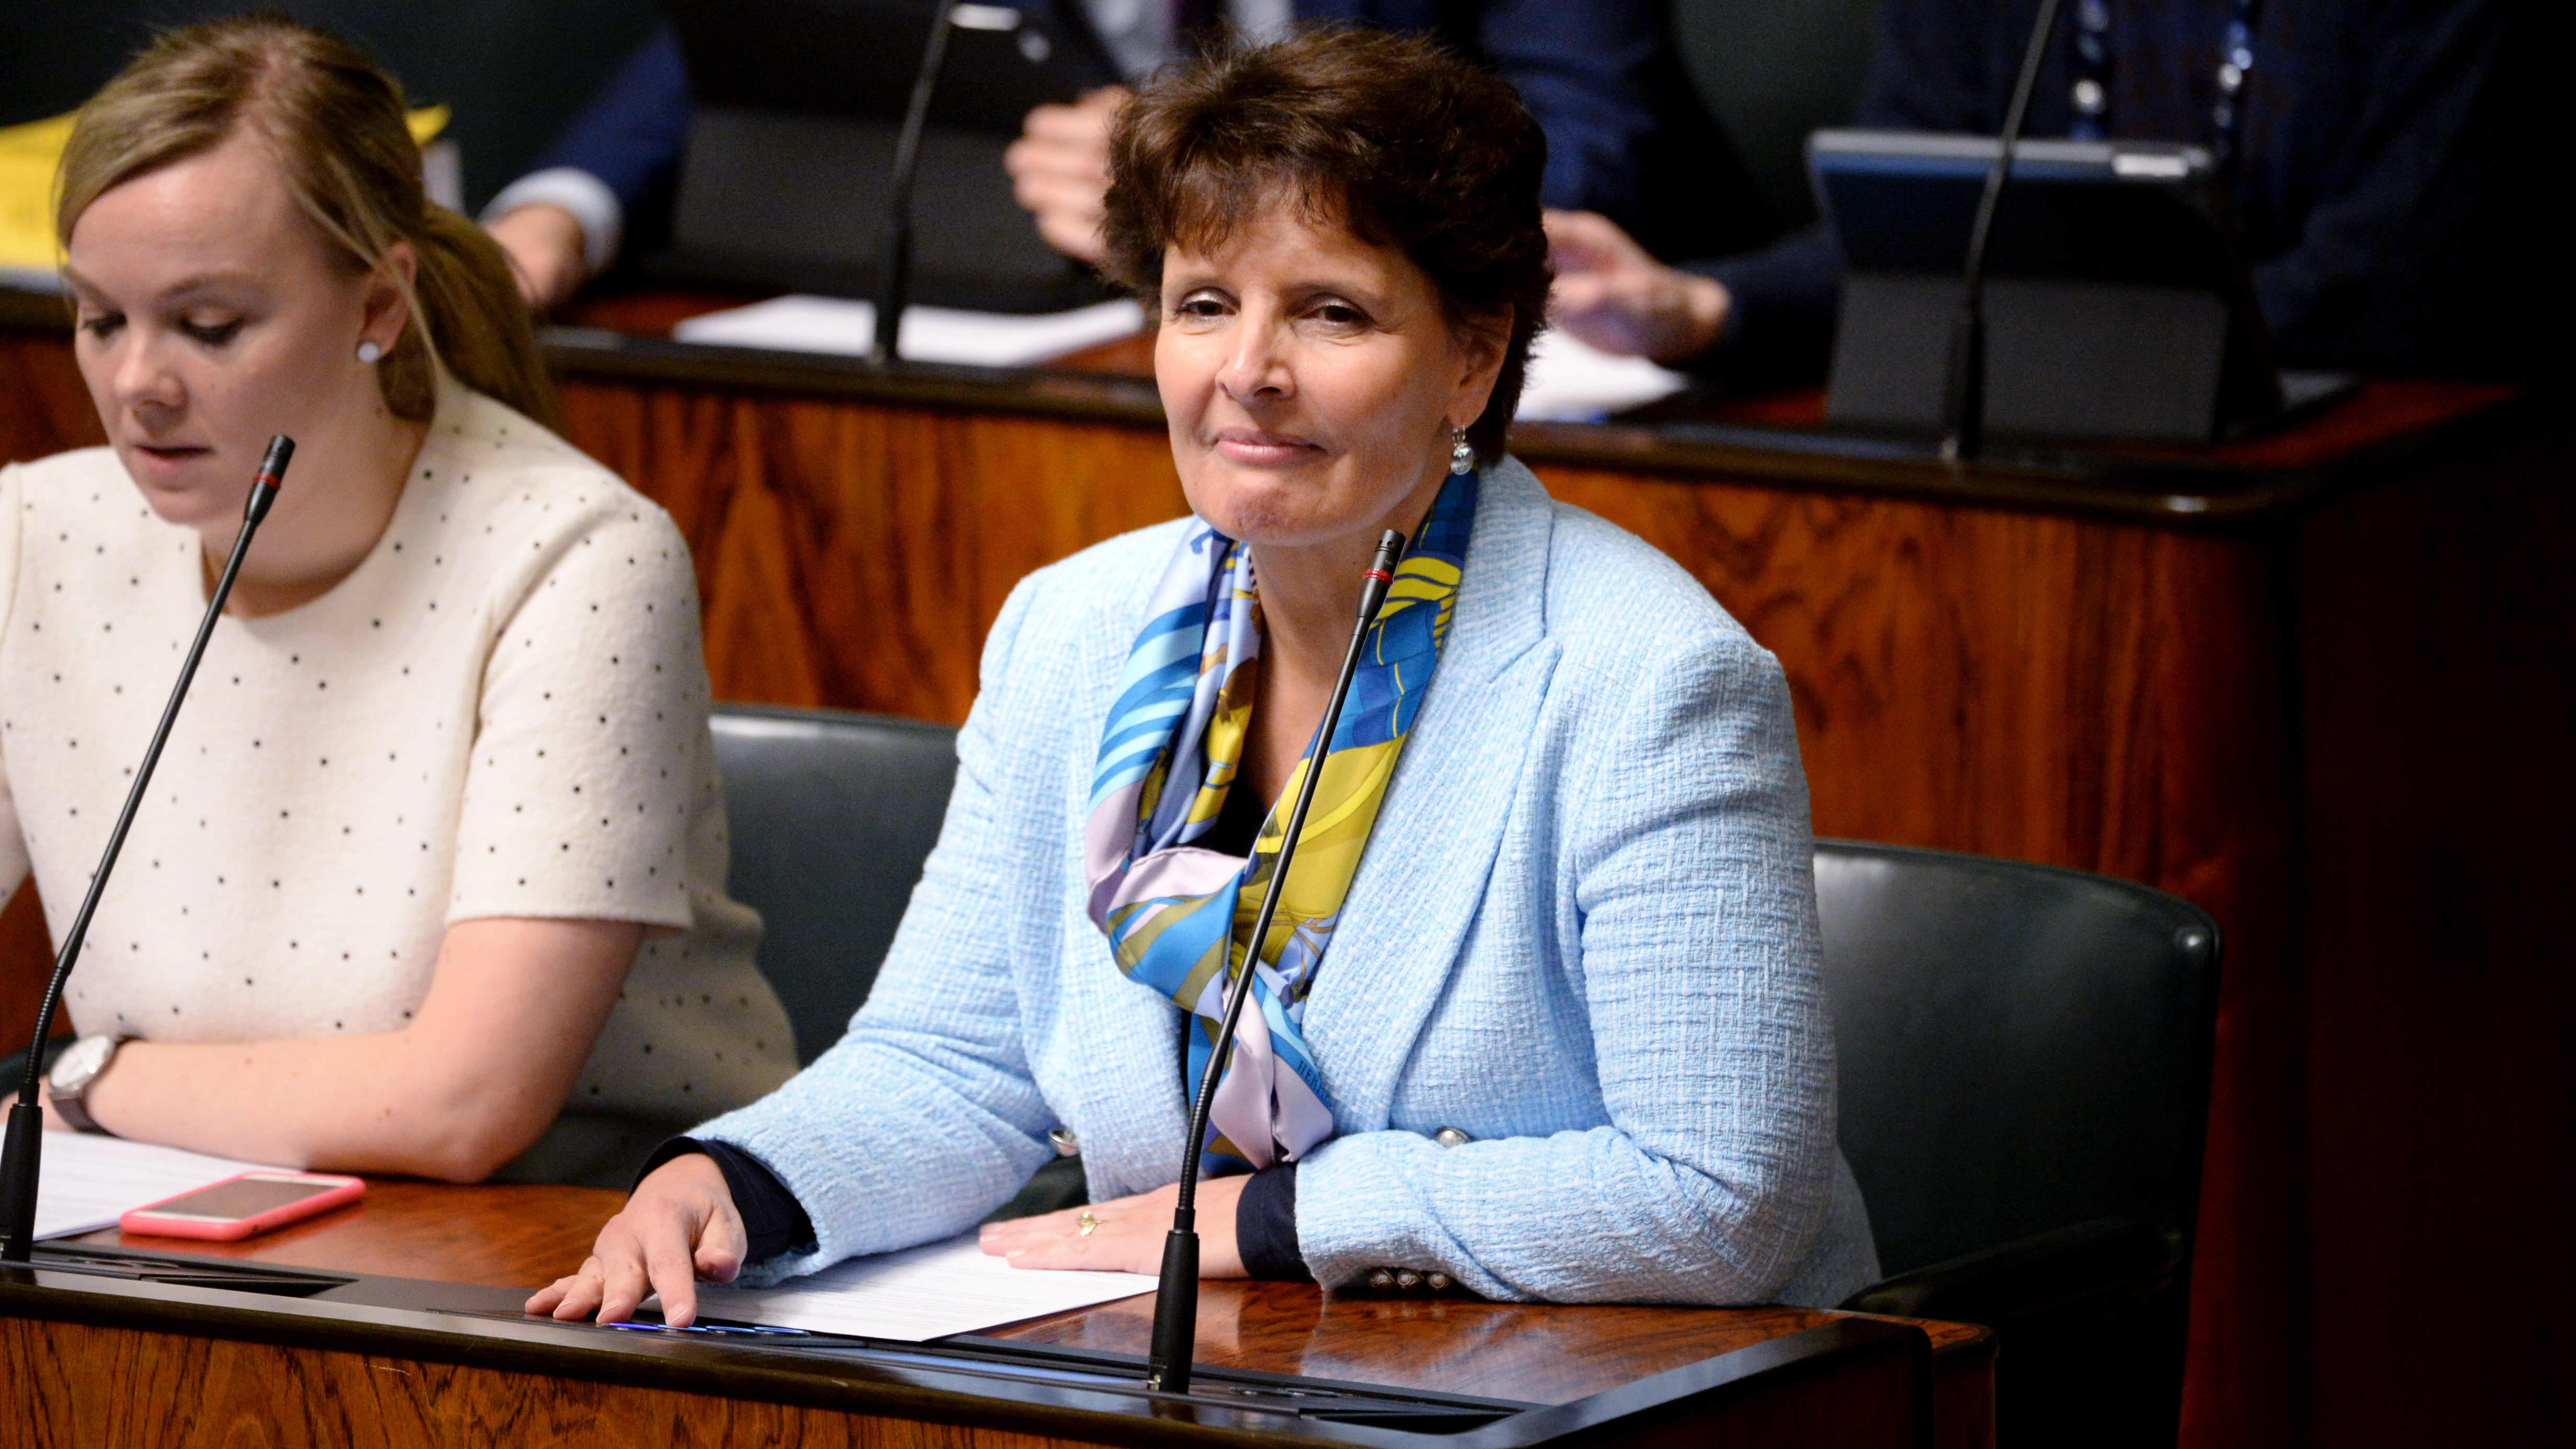 Trafikminister Anne Berner sitter i riksdagsbänken klädd i en ljusblå kavaj.